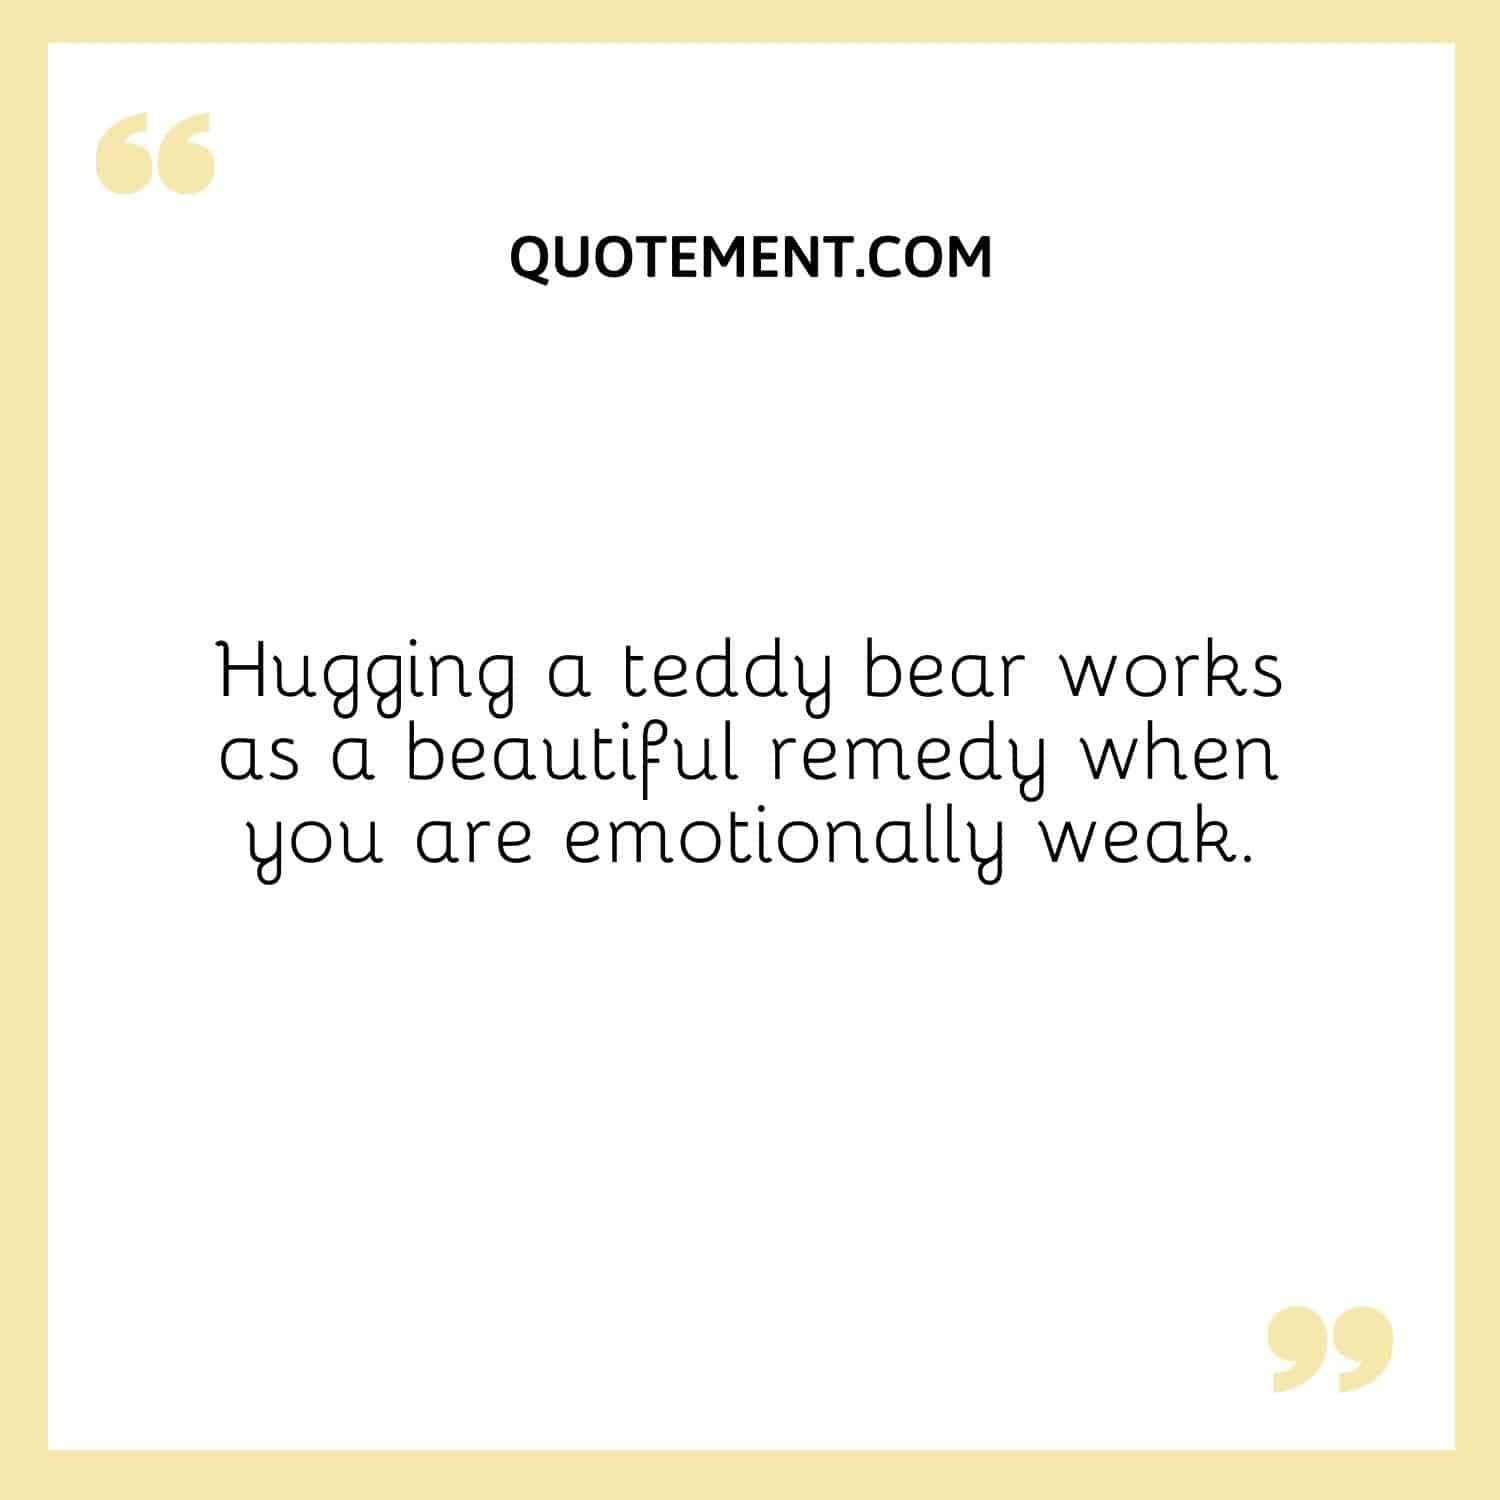 Hugging a teddy bear works as a beautiful remedy